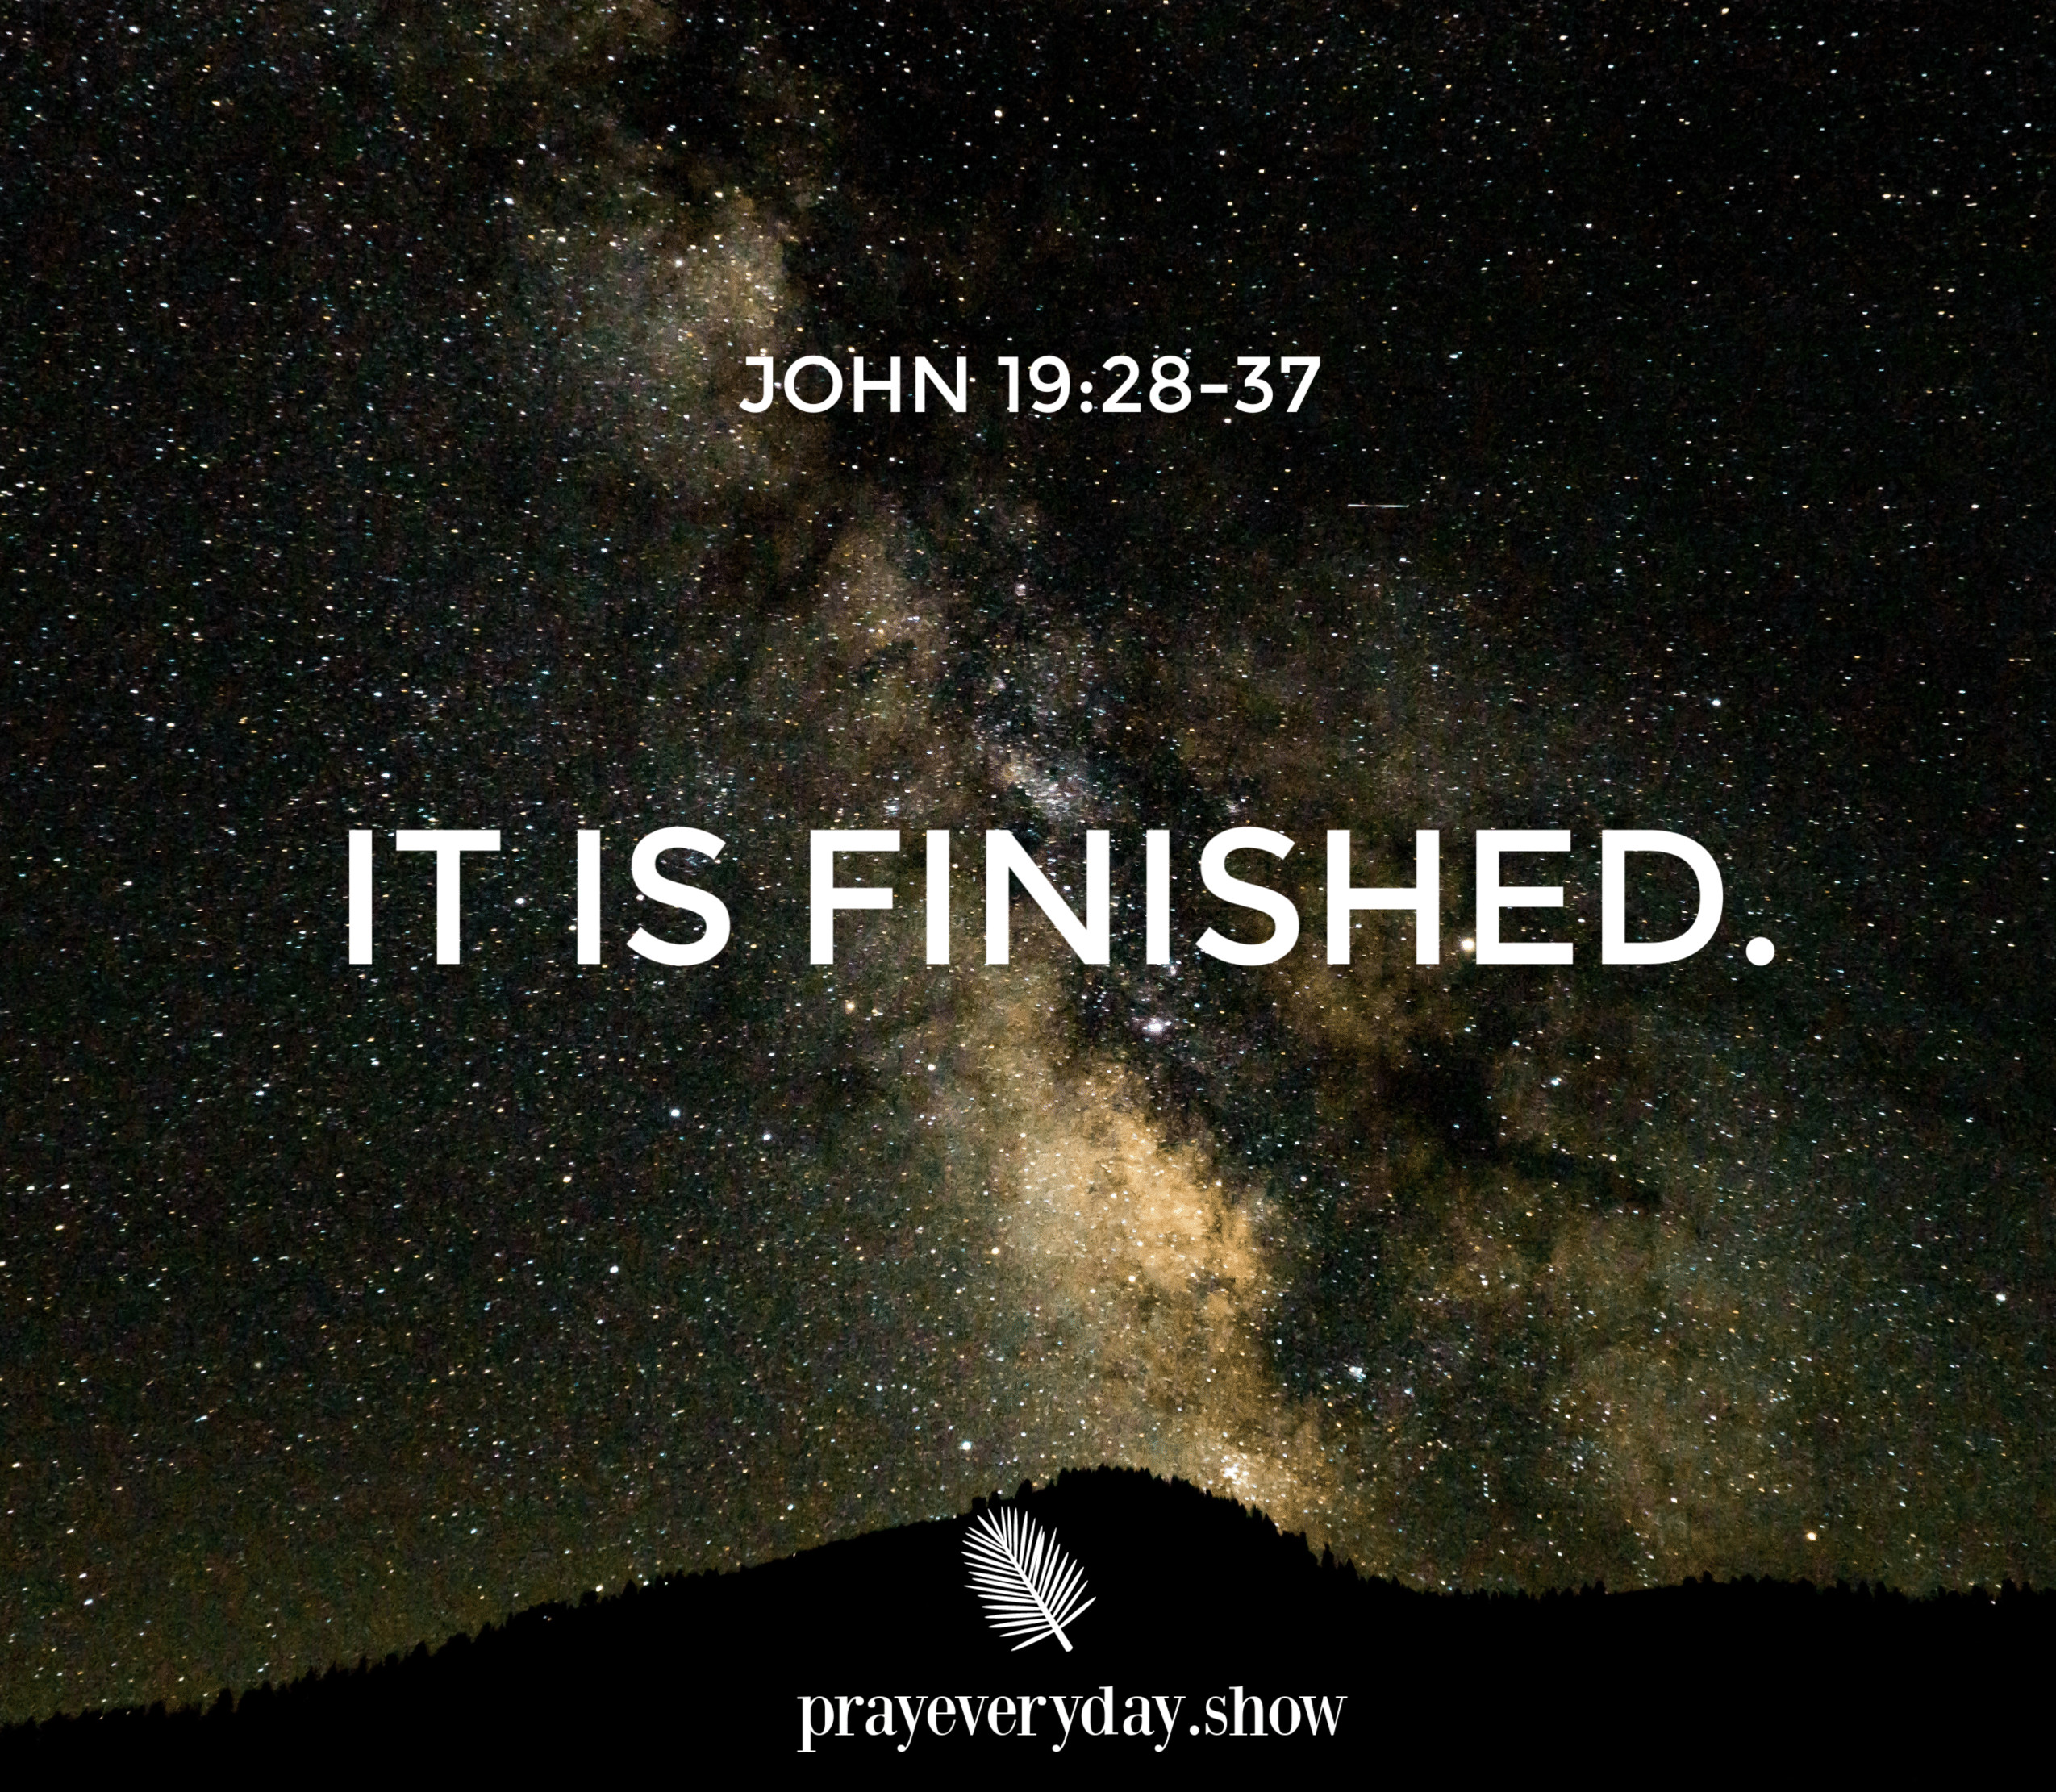 John 19:28-37